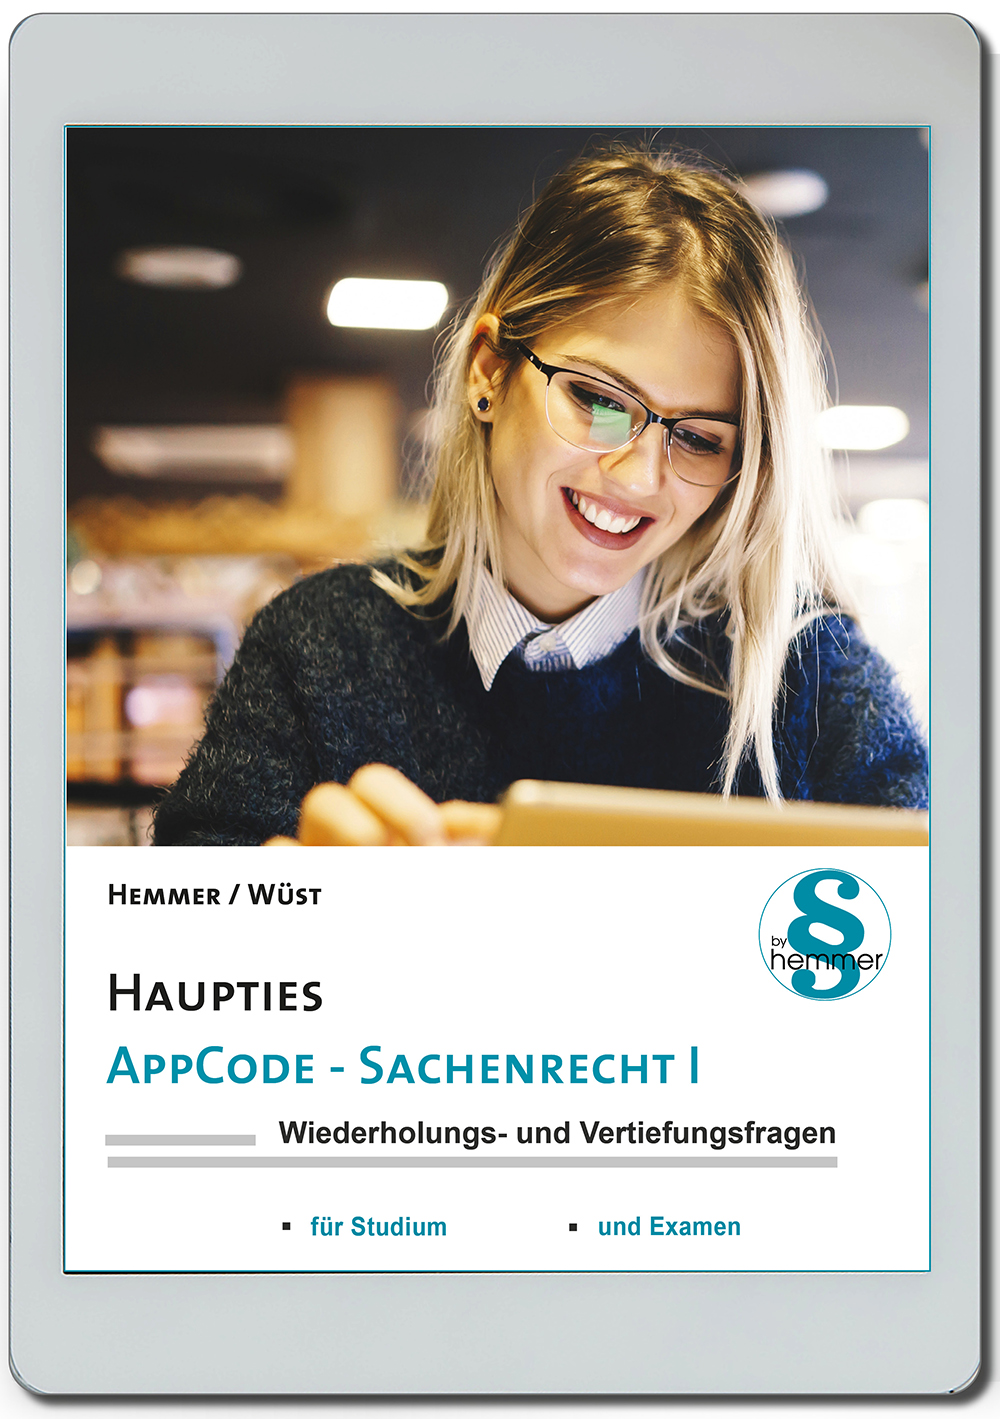 AppCode - haupties - Sachenrecht I